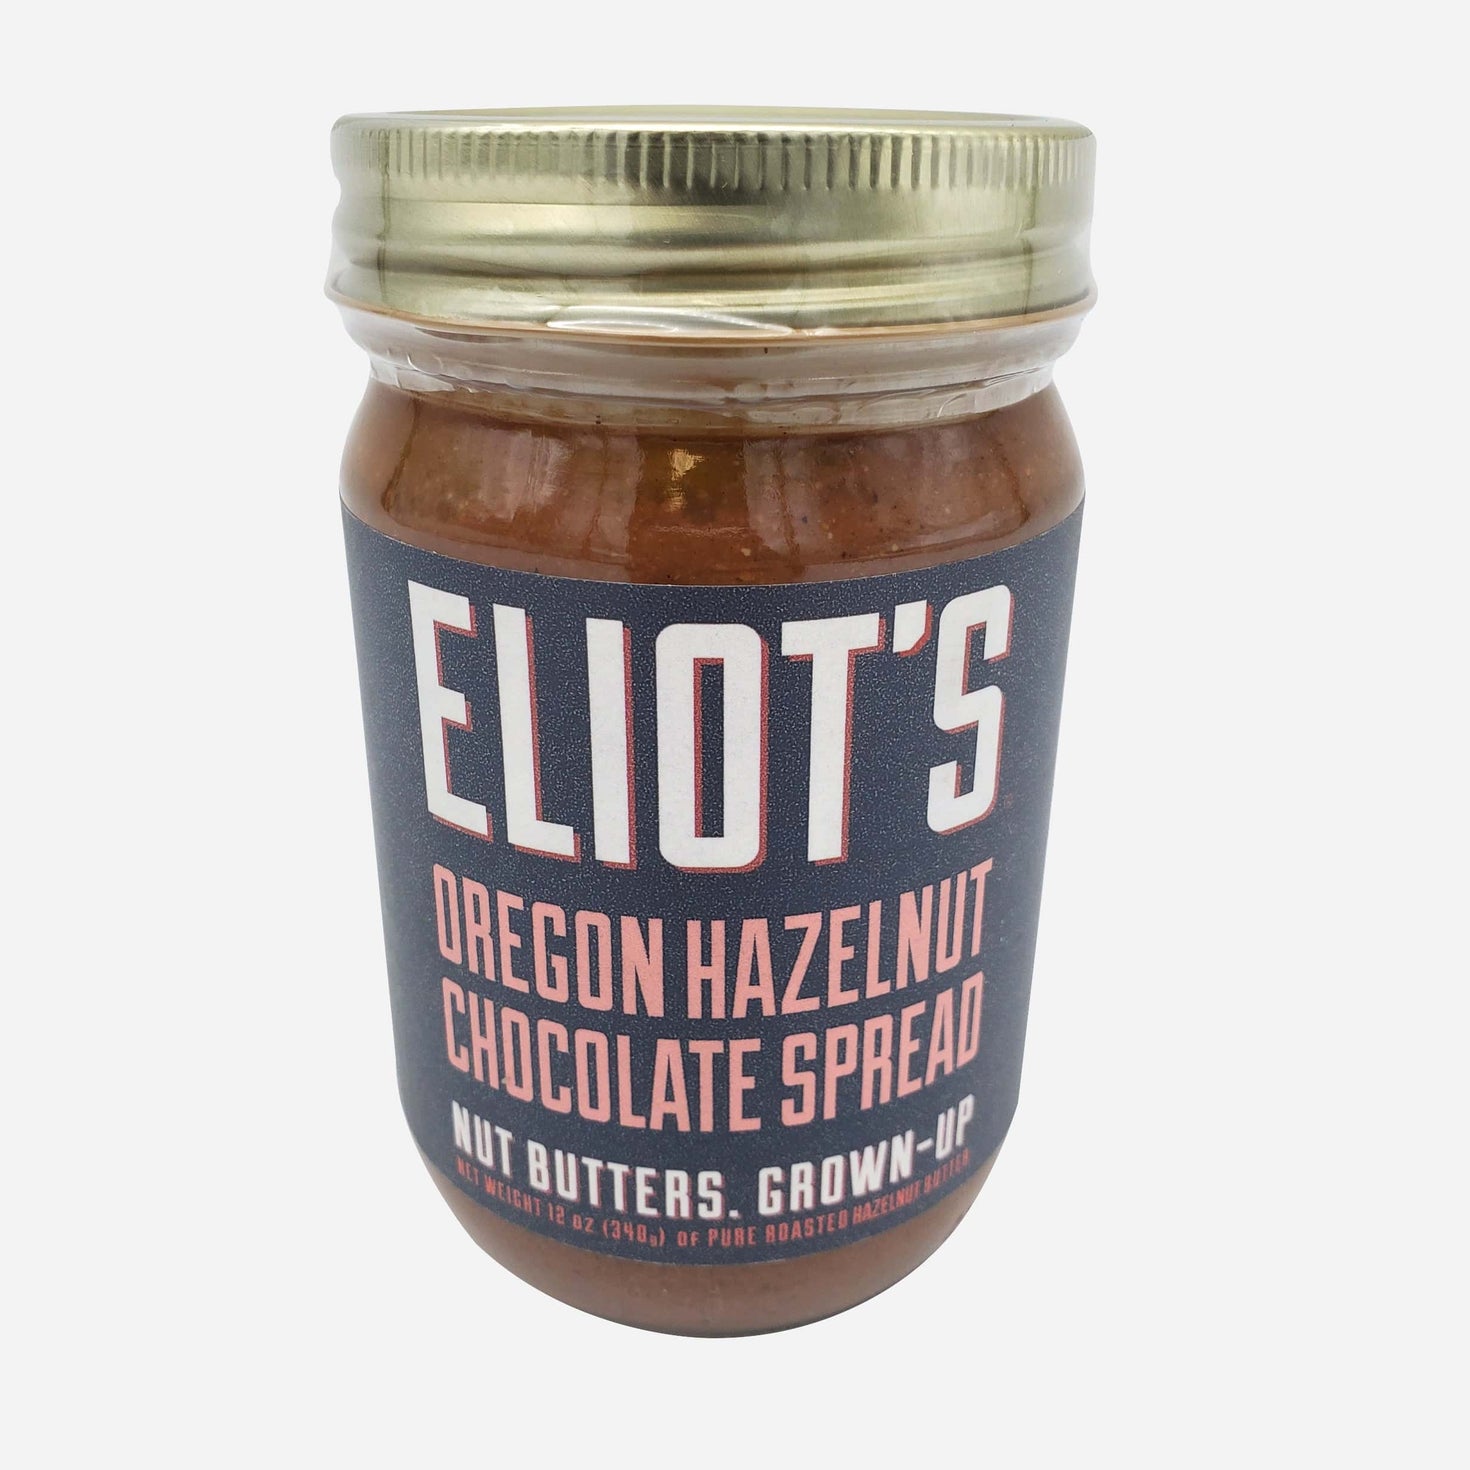 Eliot's Oregon Hazelnut Chocolate Spread 12oz